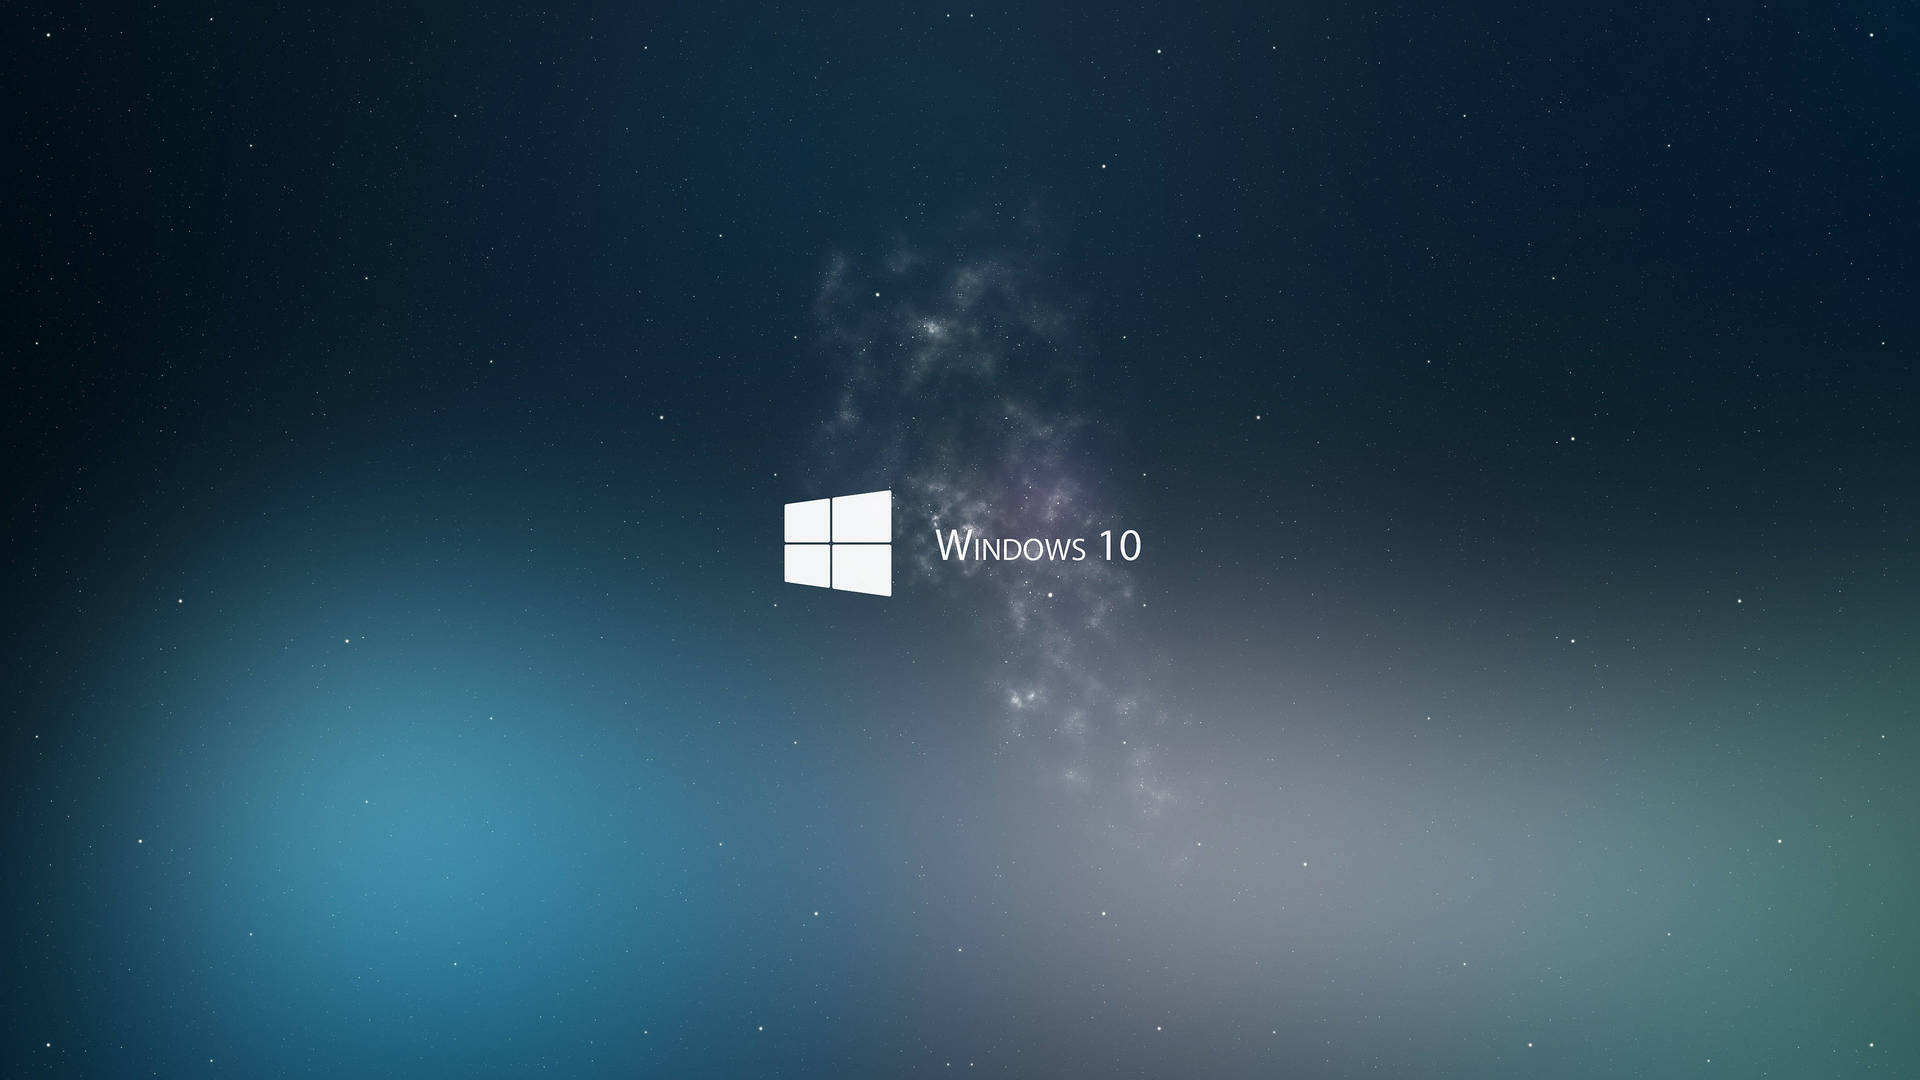 Starry Dark Windows 10